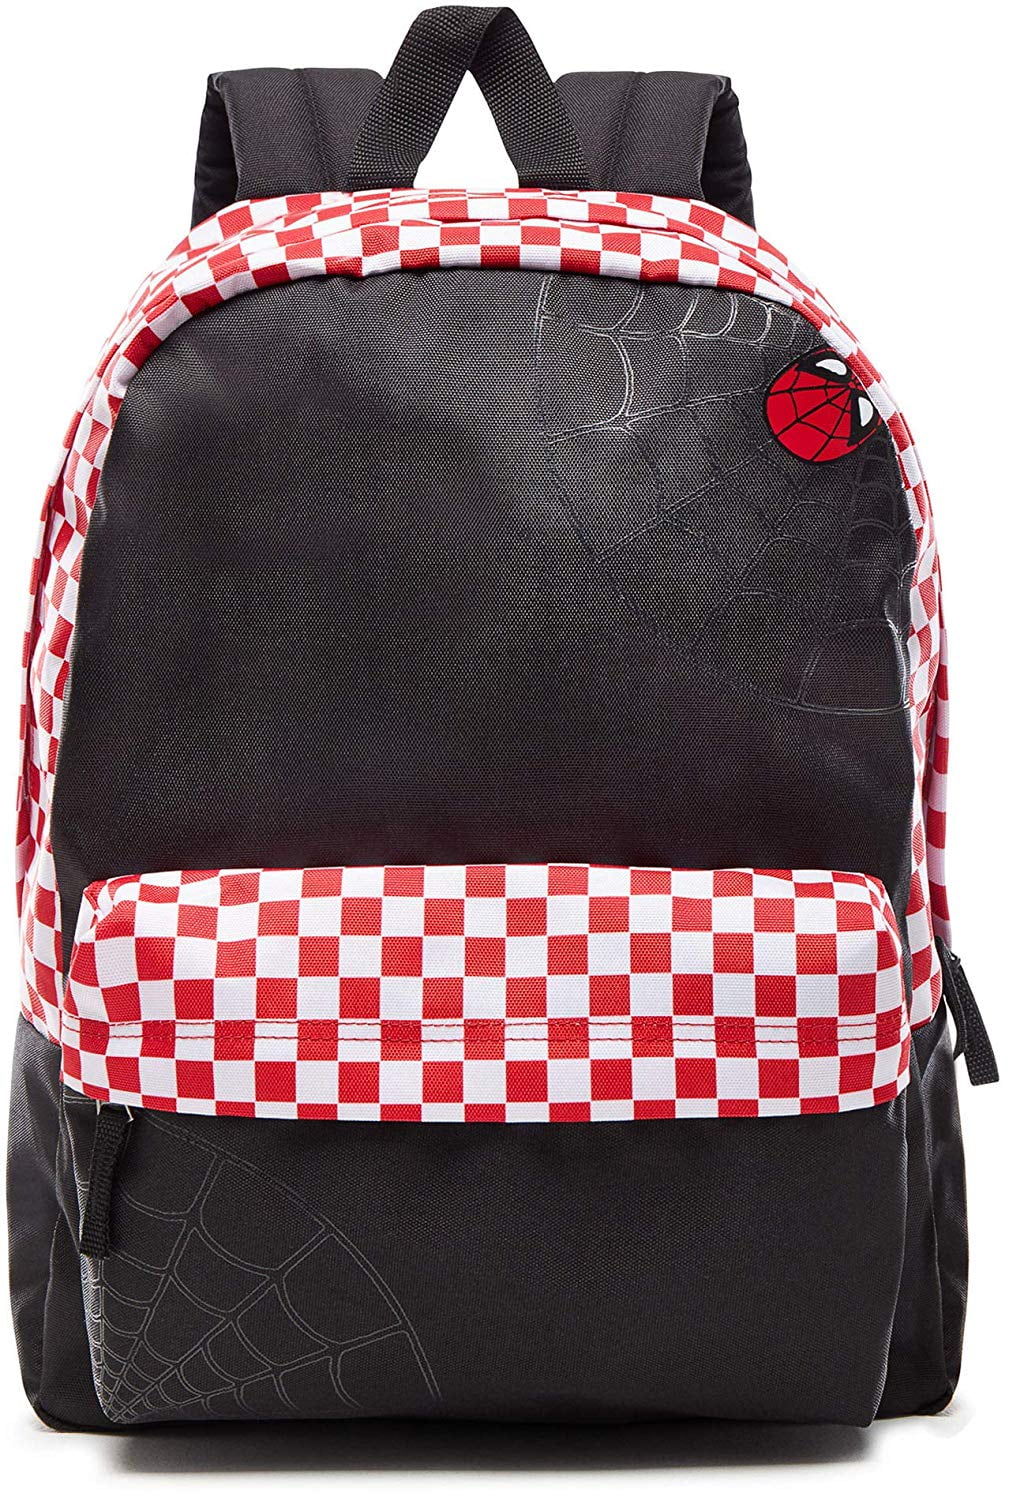 Vans Spidey Marvel Backpack School Bag